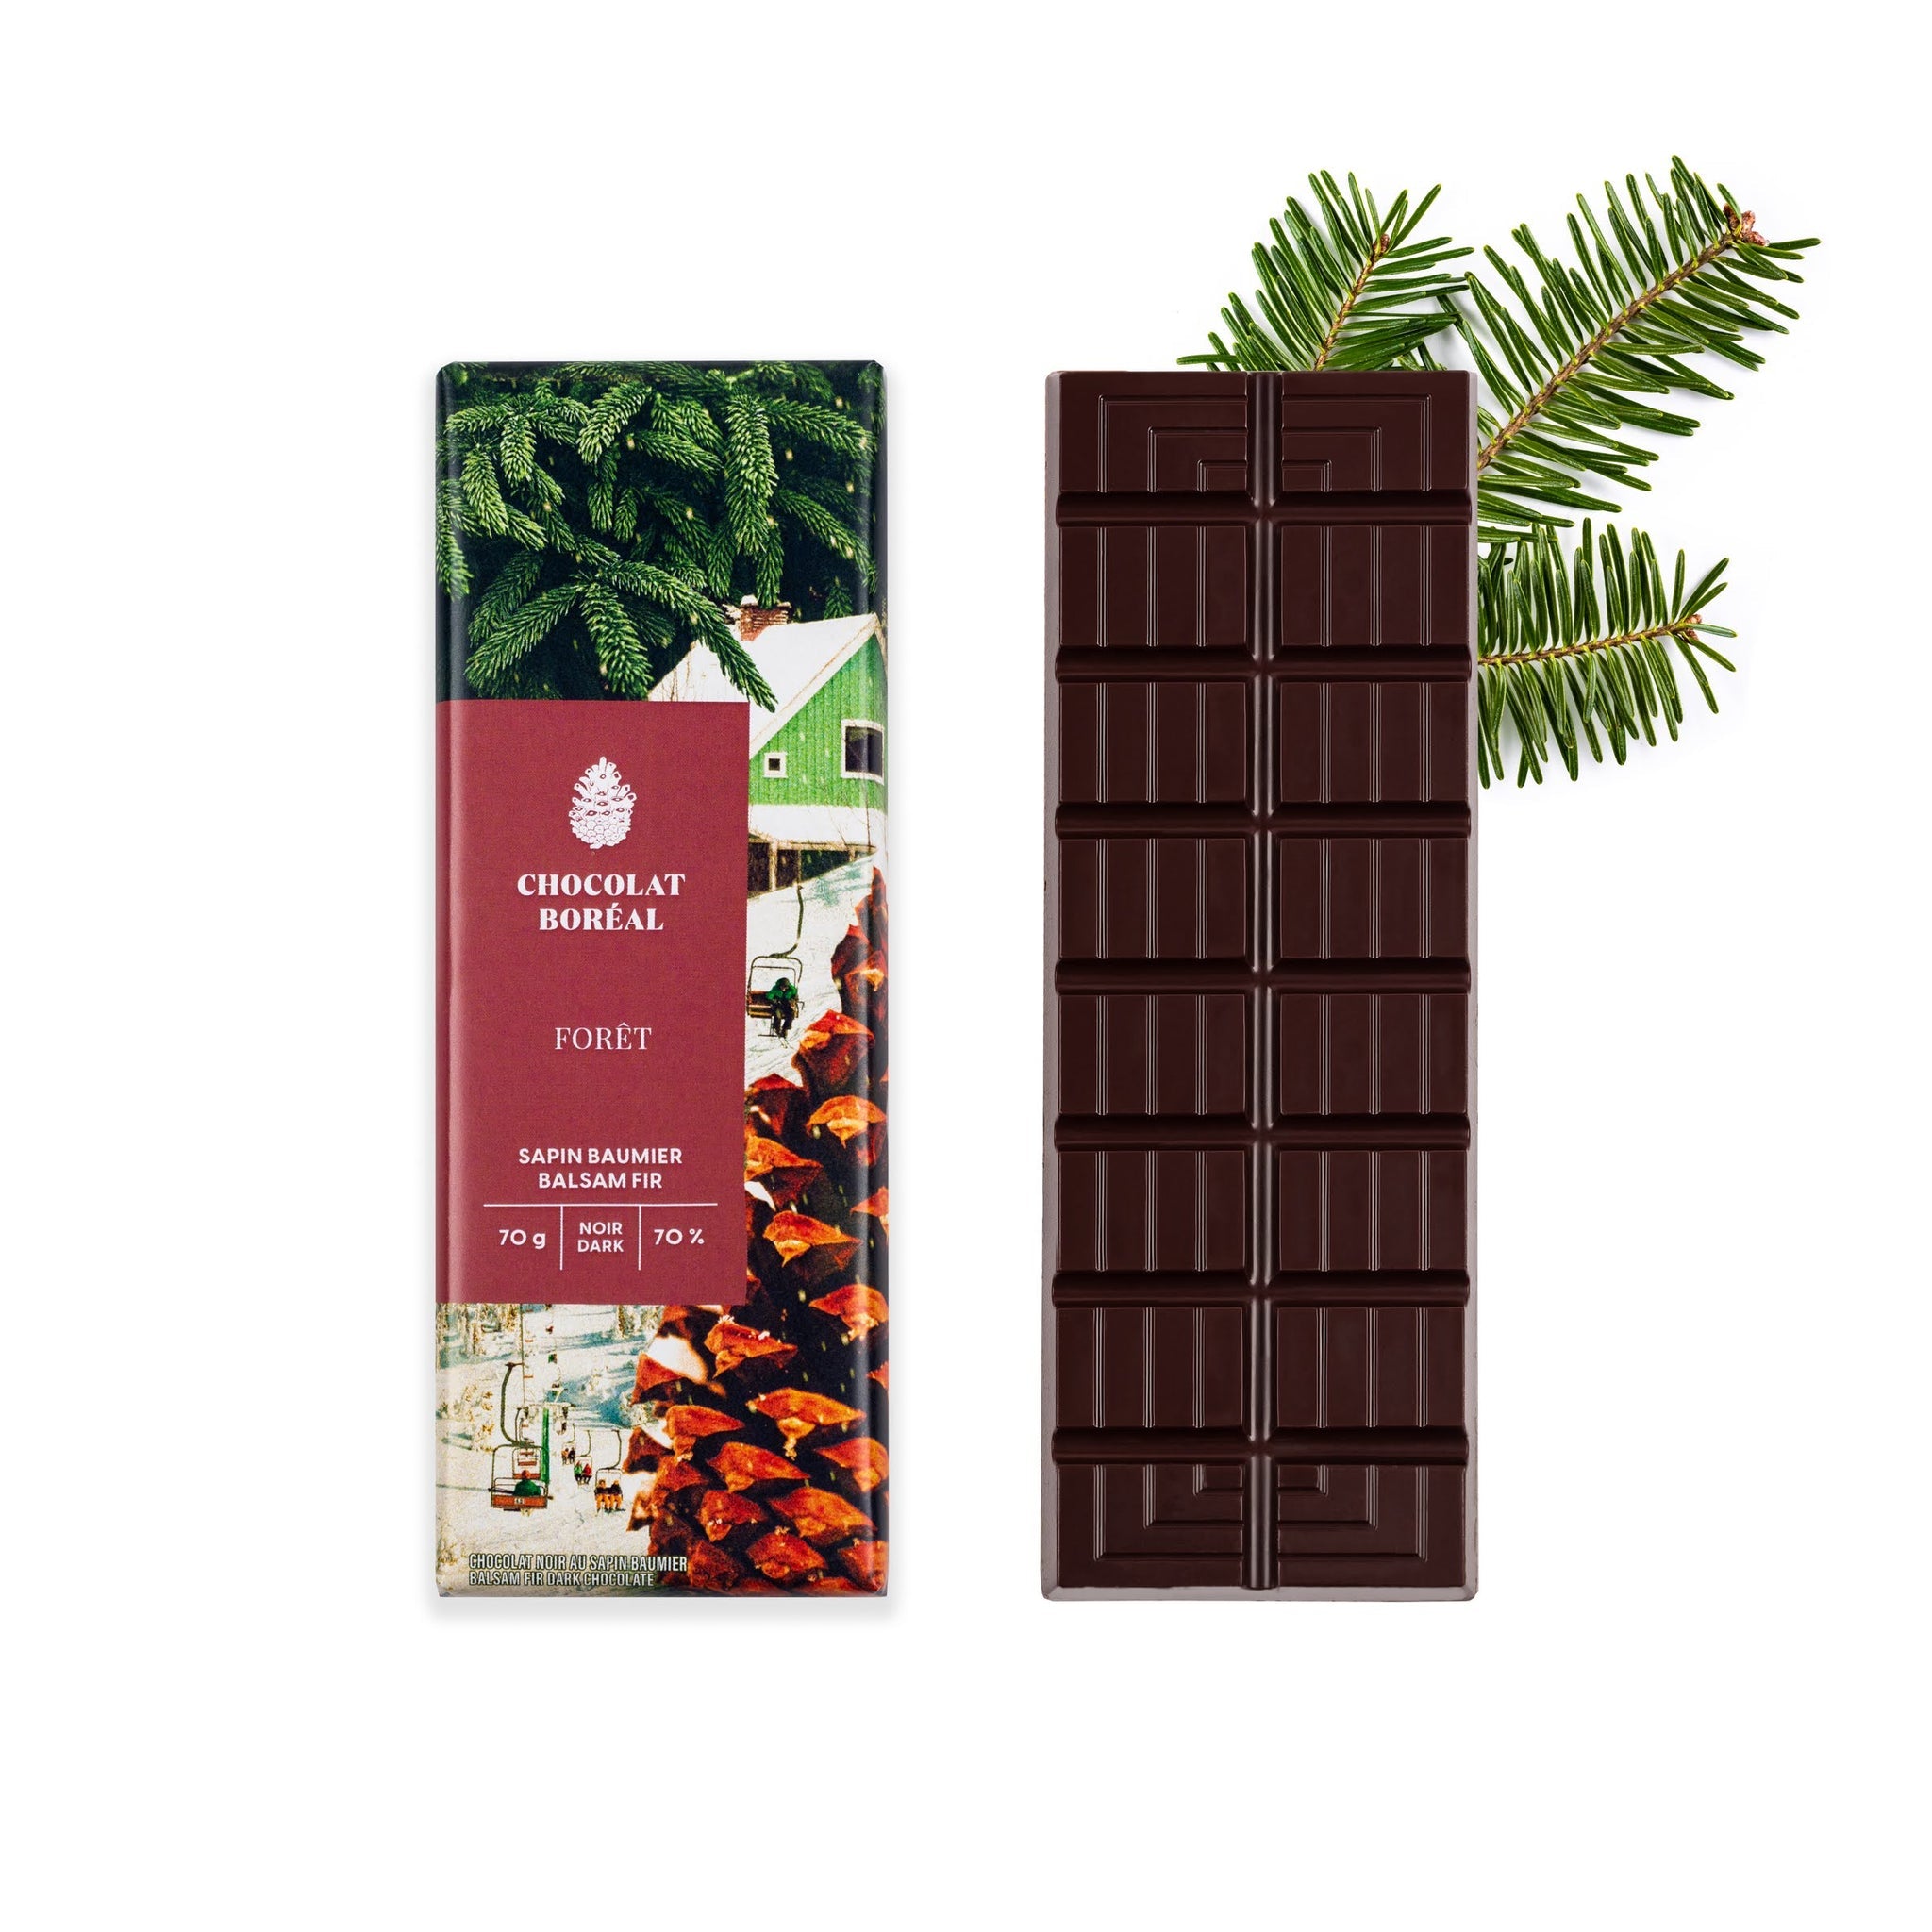 Tablette de chocolat Noir - Sapin baumier 70%    - Chocolat Boréal - Tablette de chocolat - 